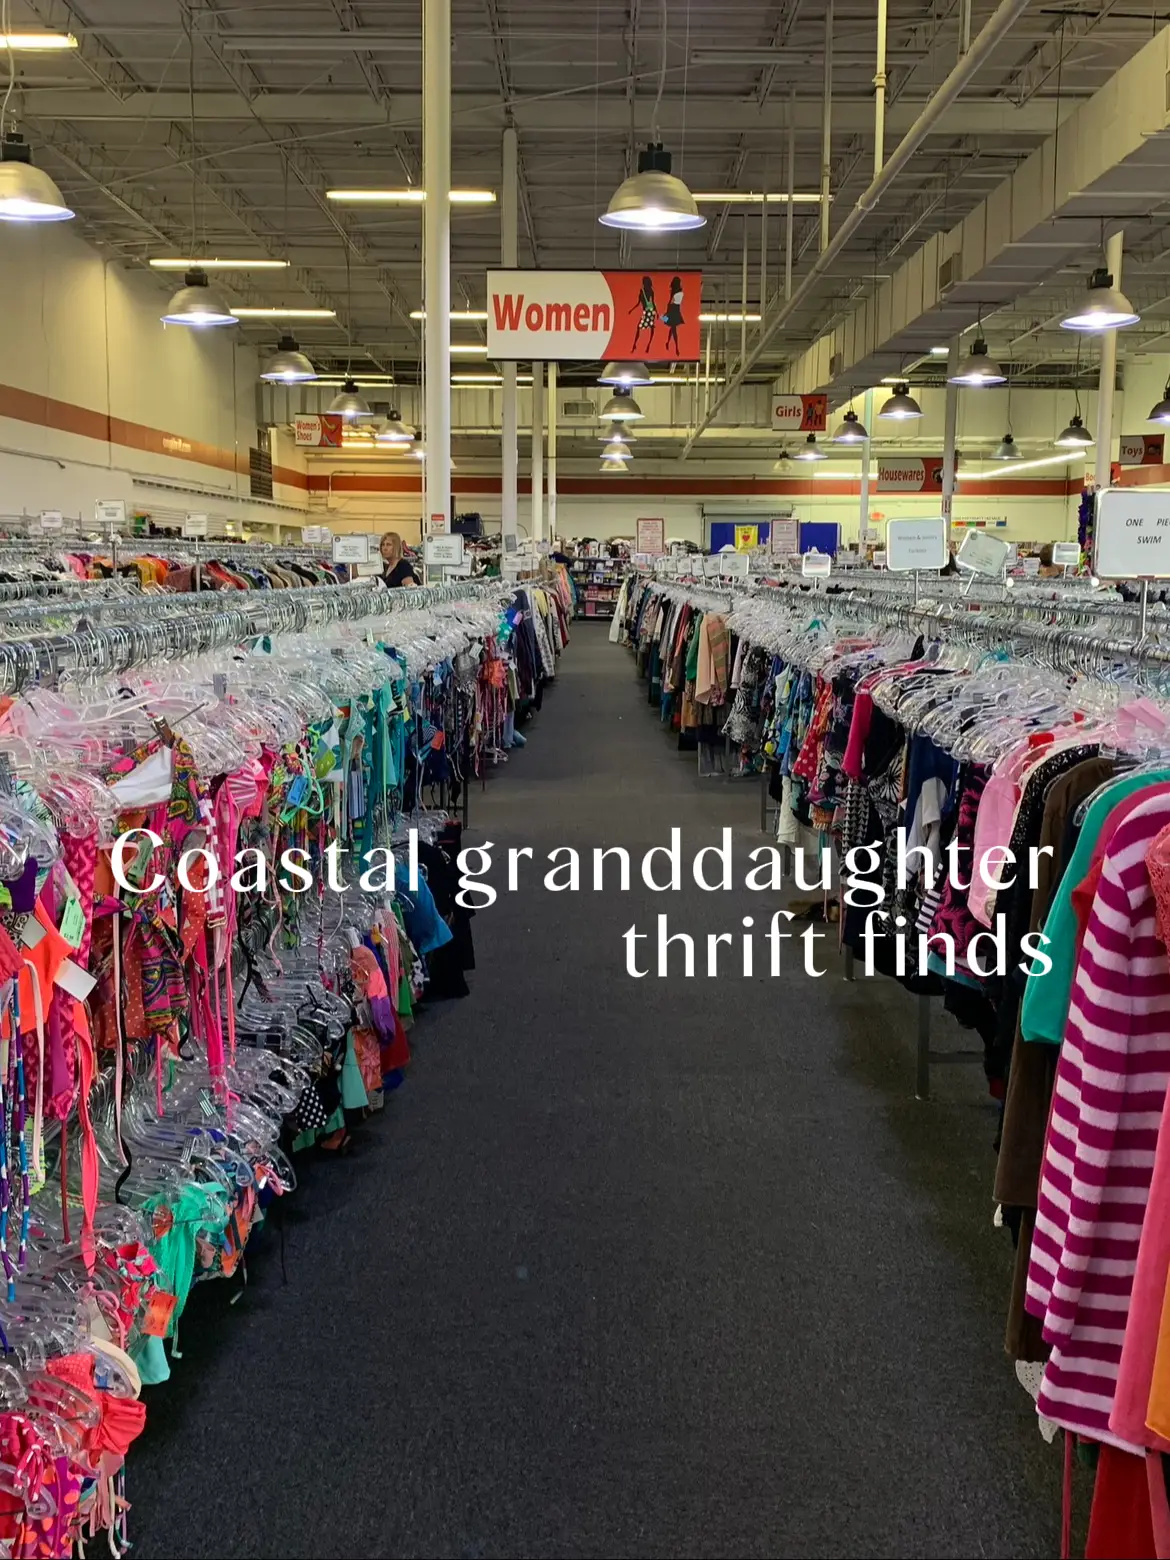 Coastal granddaughter thrift finds!'s images